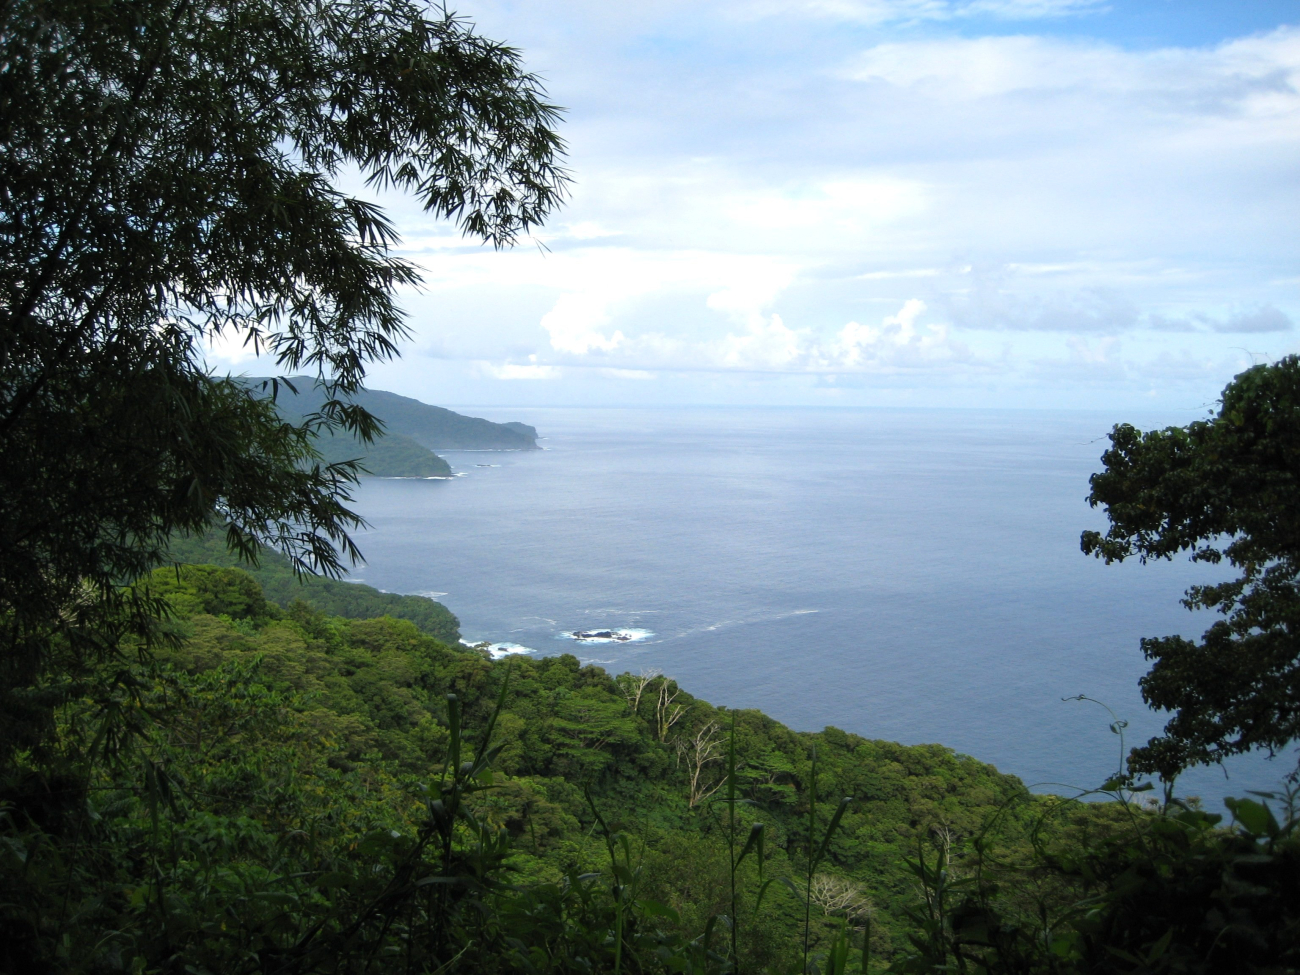 A view along the Samoan coast